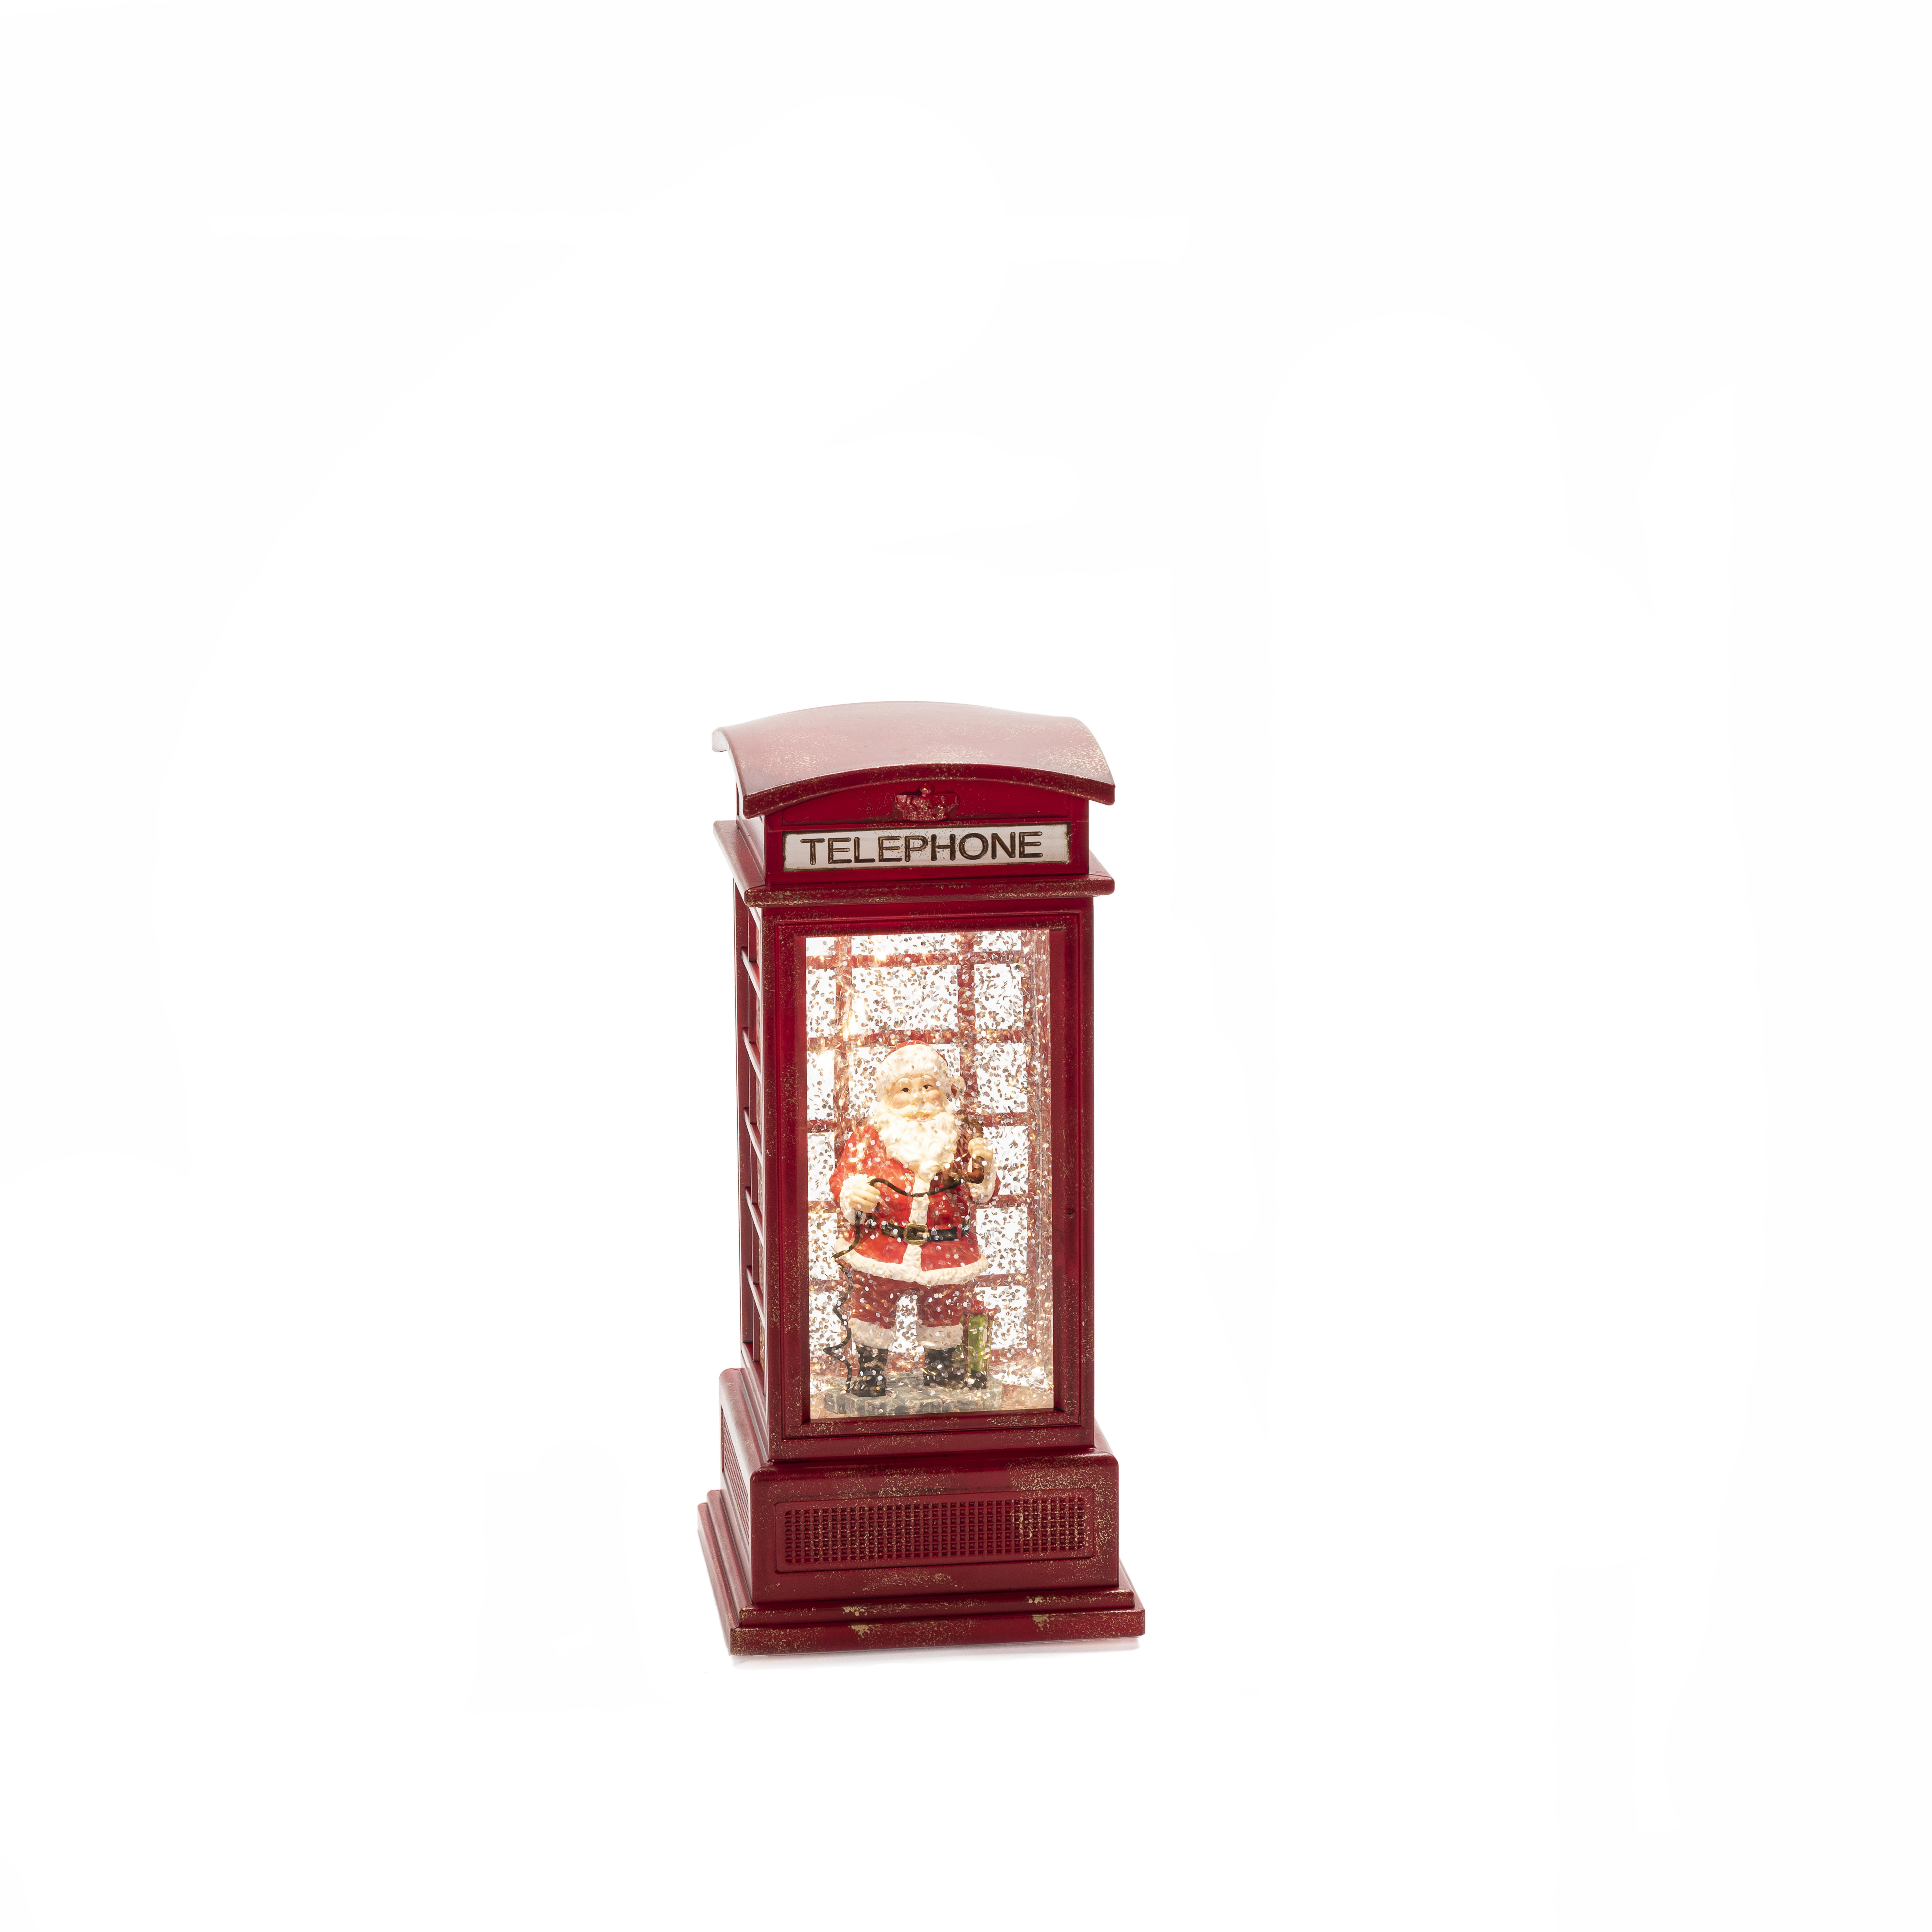 KONSTSMIDE 4388-550 Wasserlaterne, Telefonzelle klein Rot, Warm Weiß Weihnachtsbeleuchtung